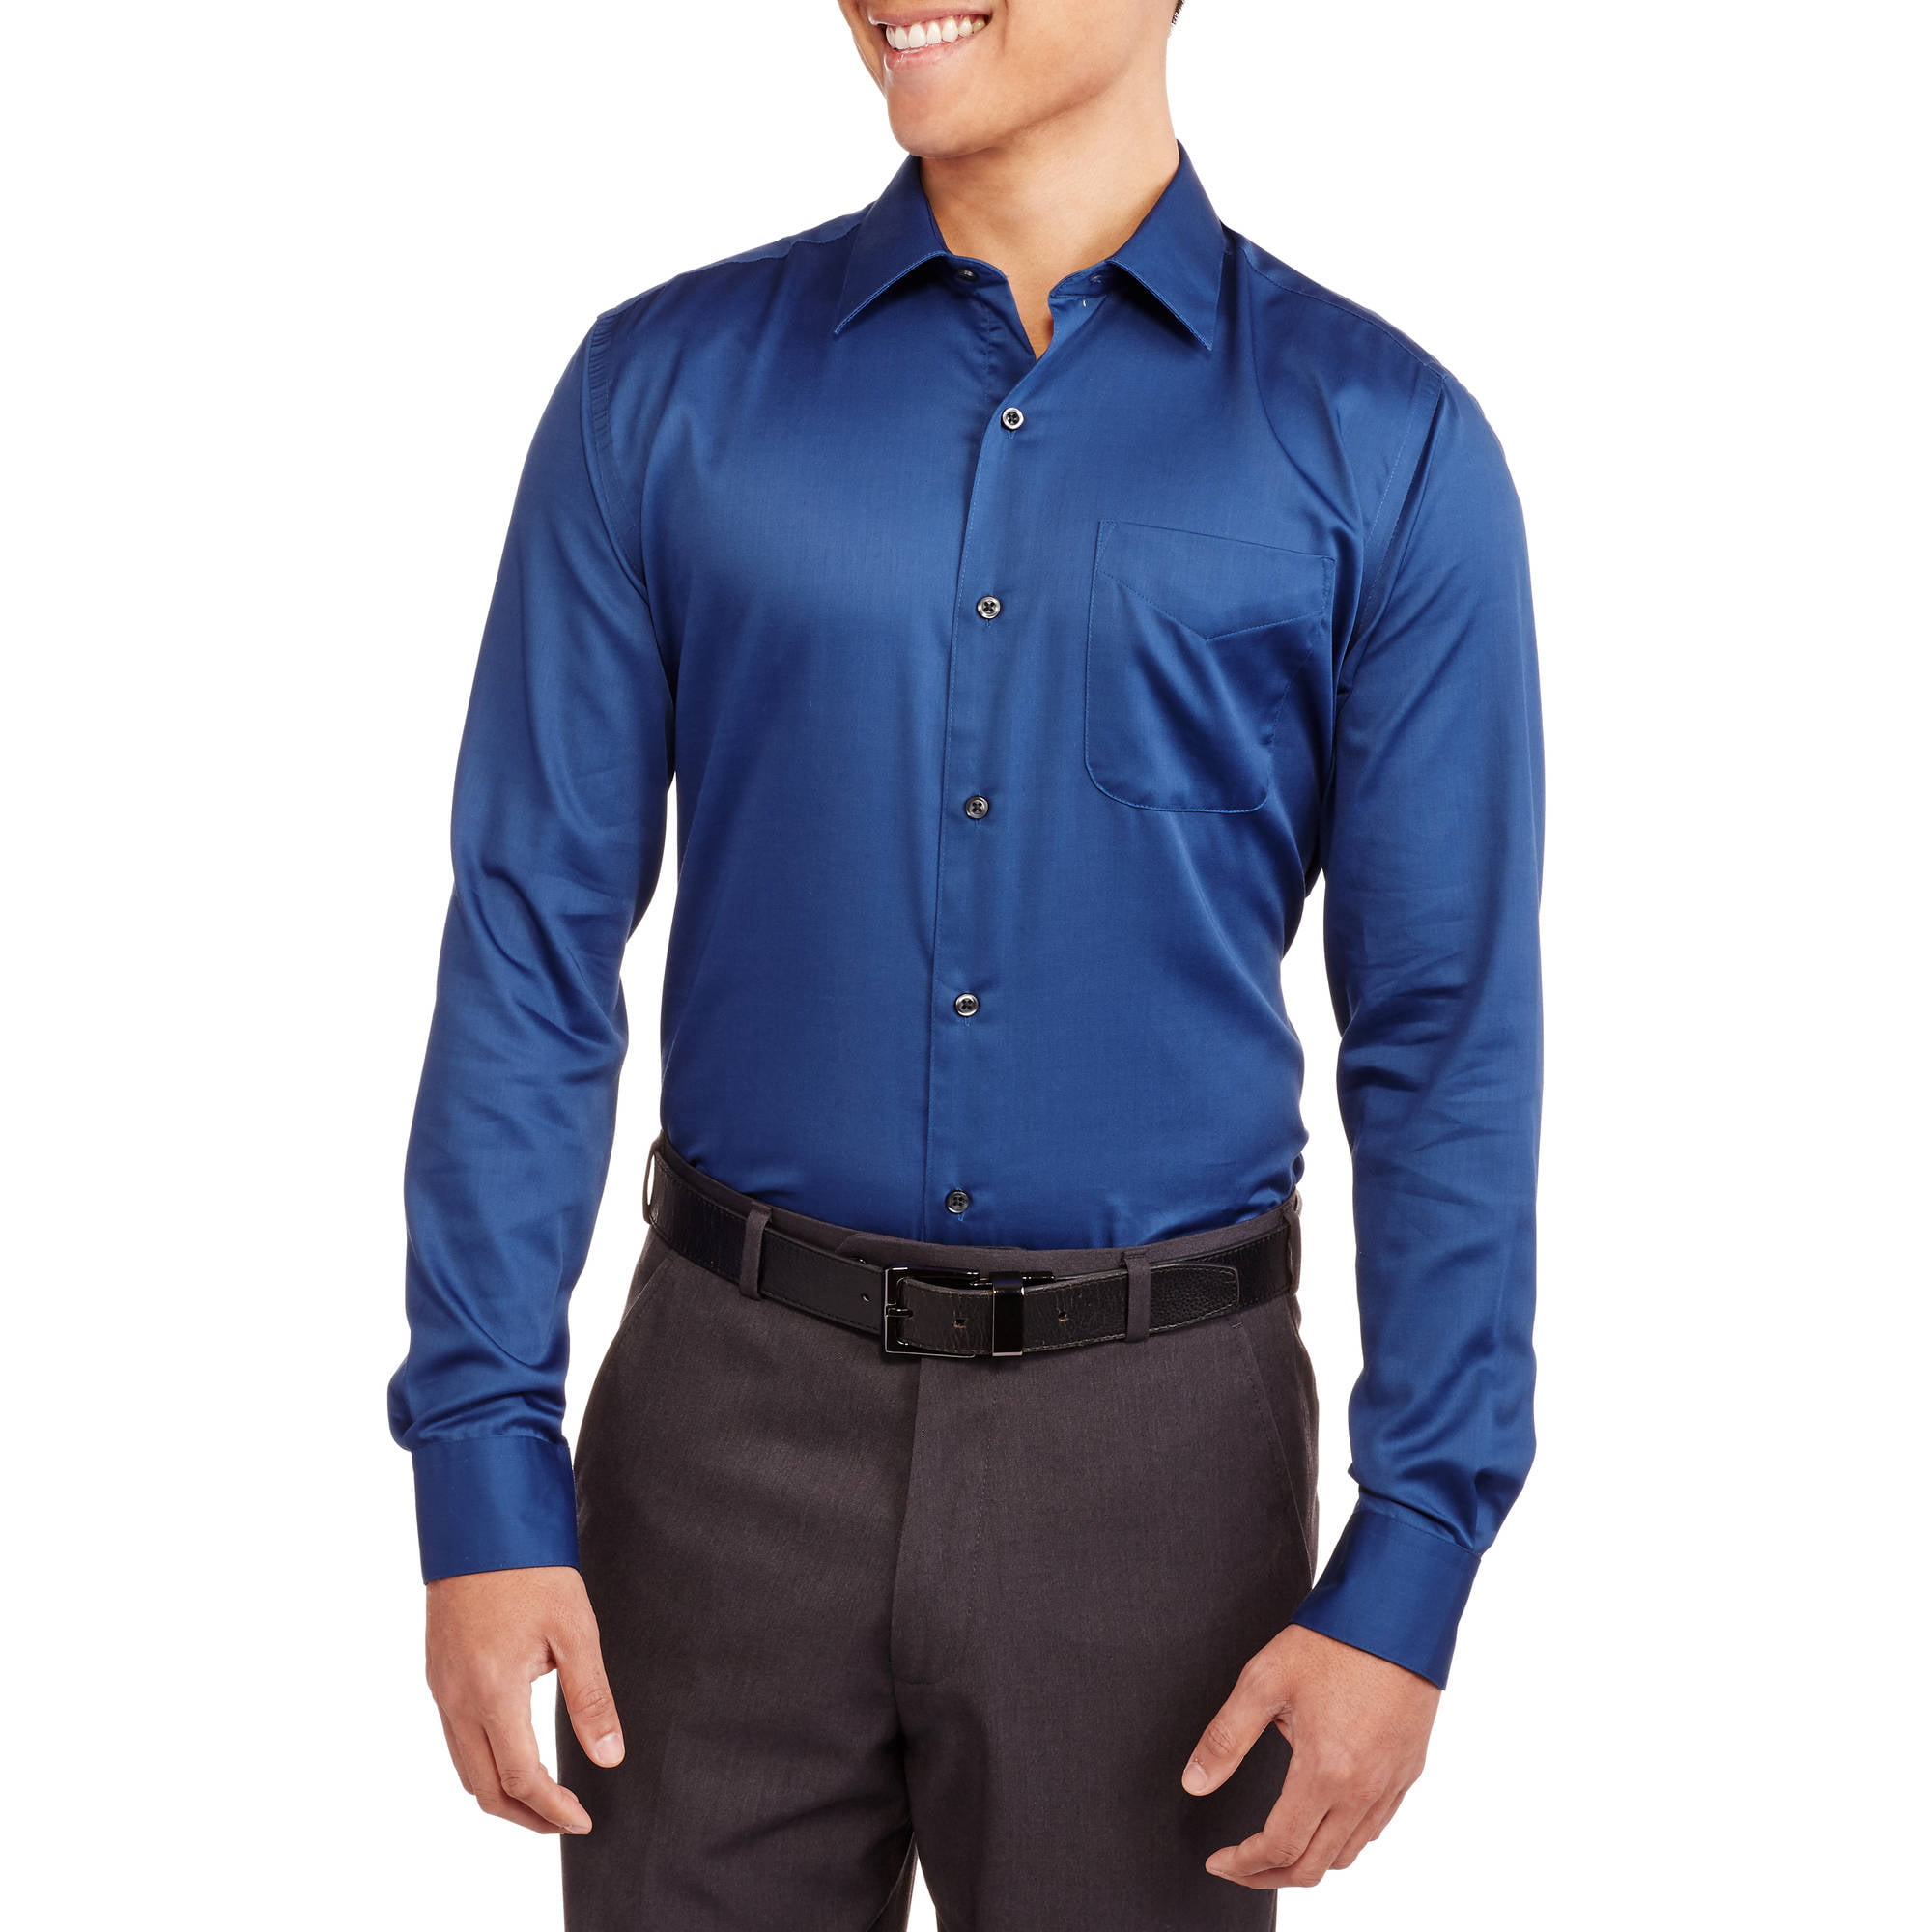 Big Men's Regular Fit Sateen Dress Shirt - Walmart.com